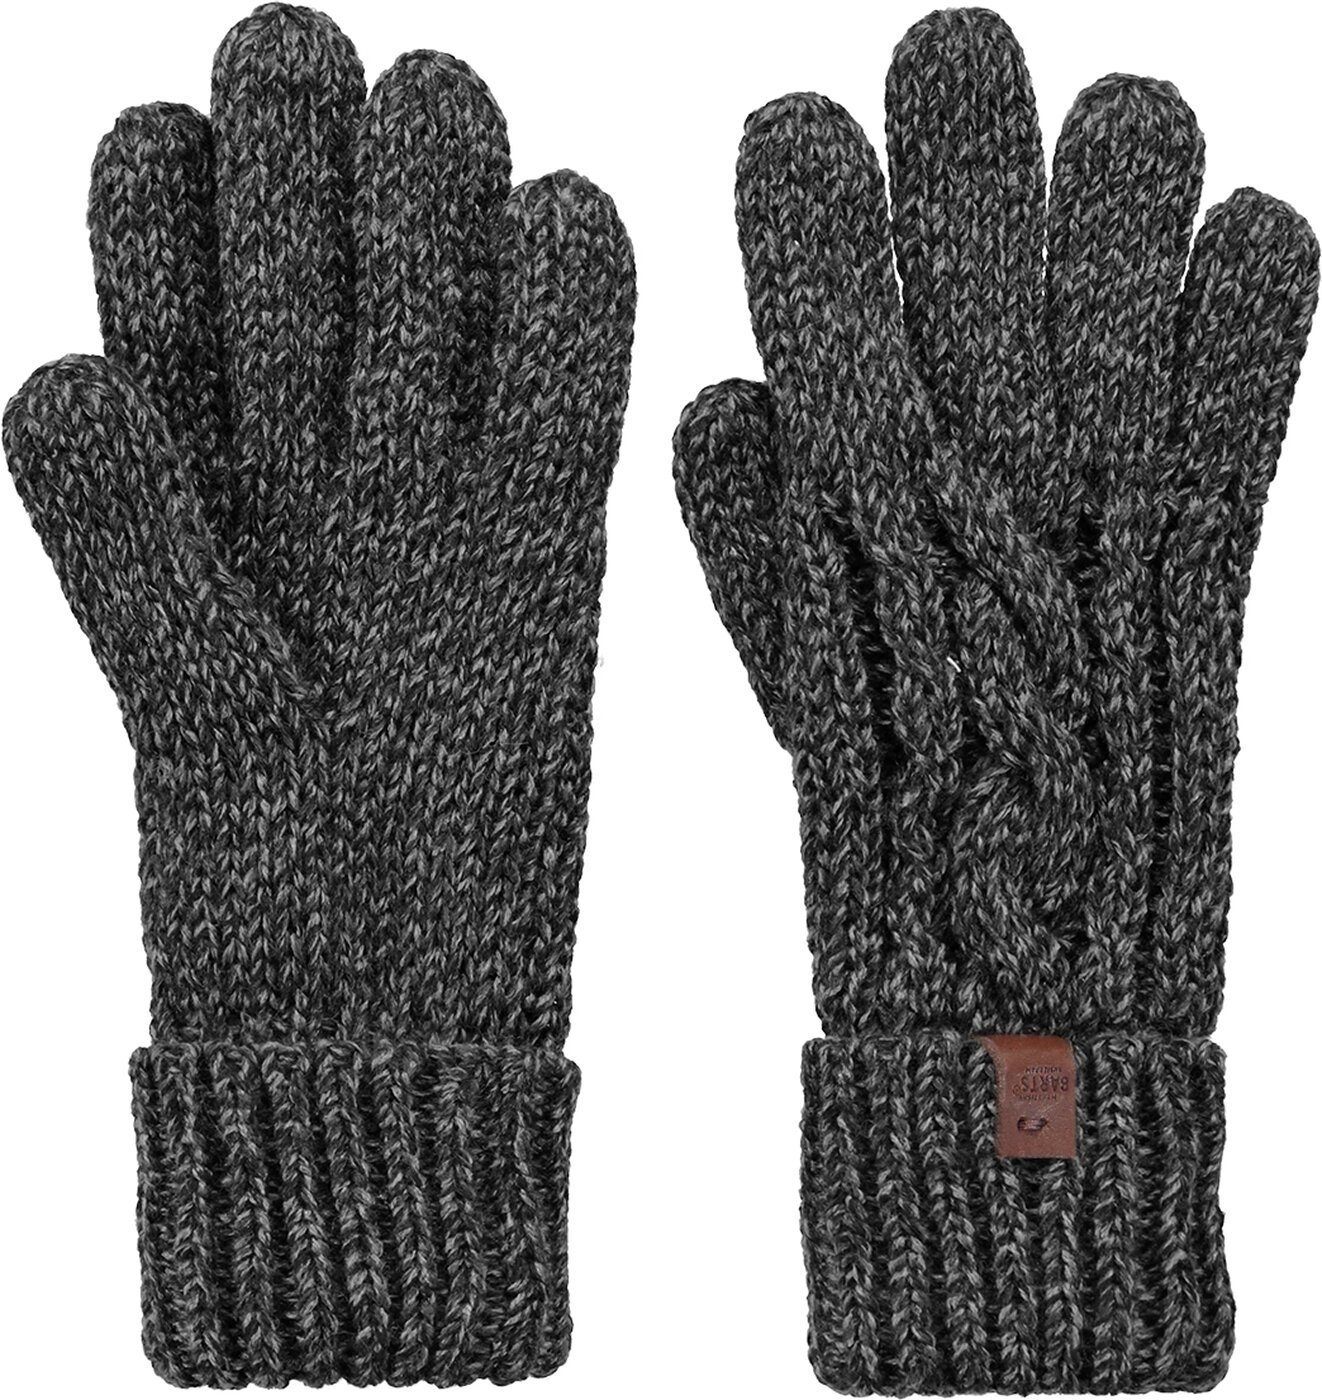 Barts Baumwollhandschuhe Twister Gloves